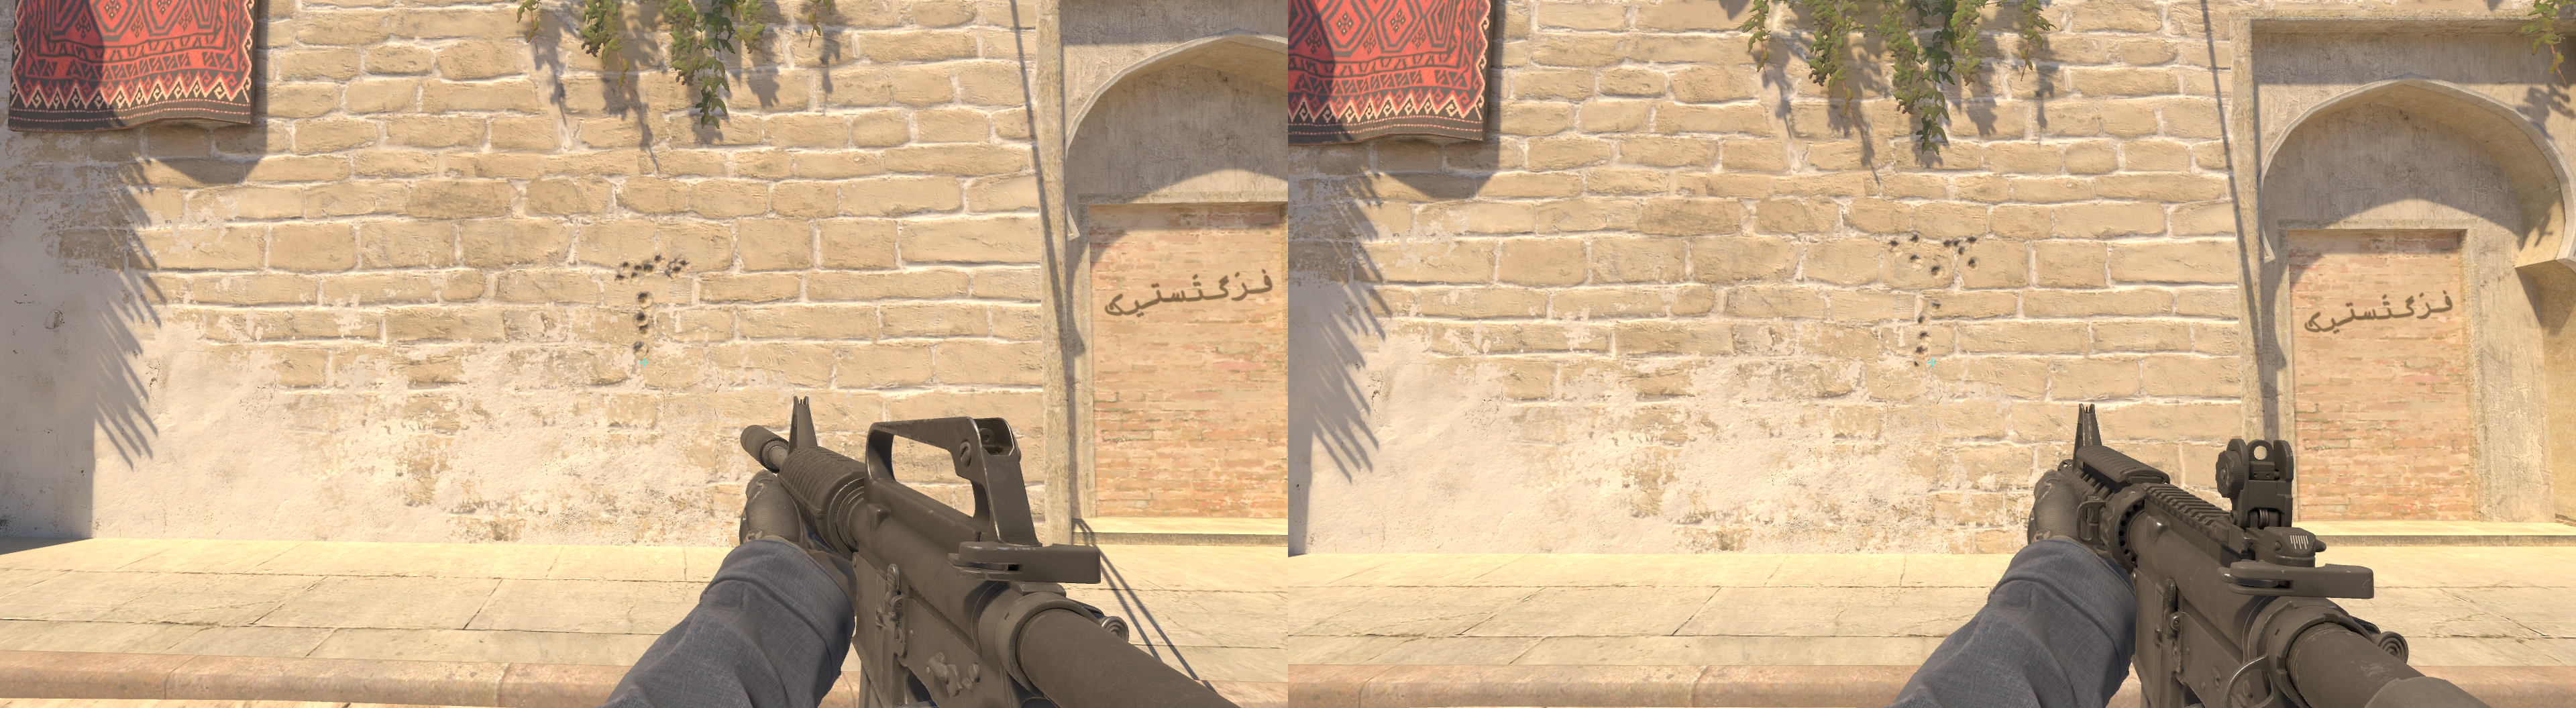 Afbeelding links toont het spuitpatroon van de M4A1-S in CS2, terwijl de afbeelding aan de rechterkant het spuitpatroon van de M4A4 in CS2 toont.